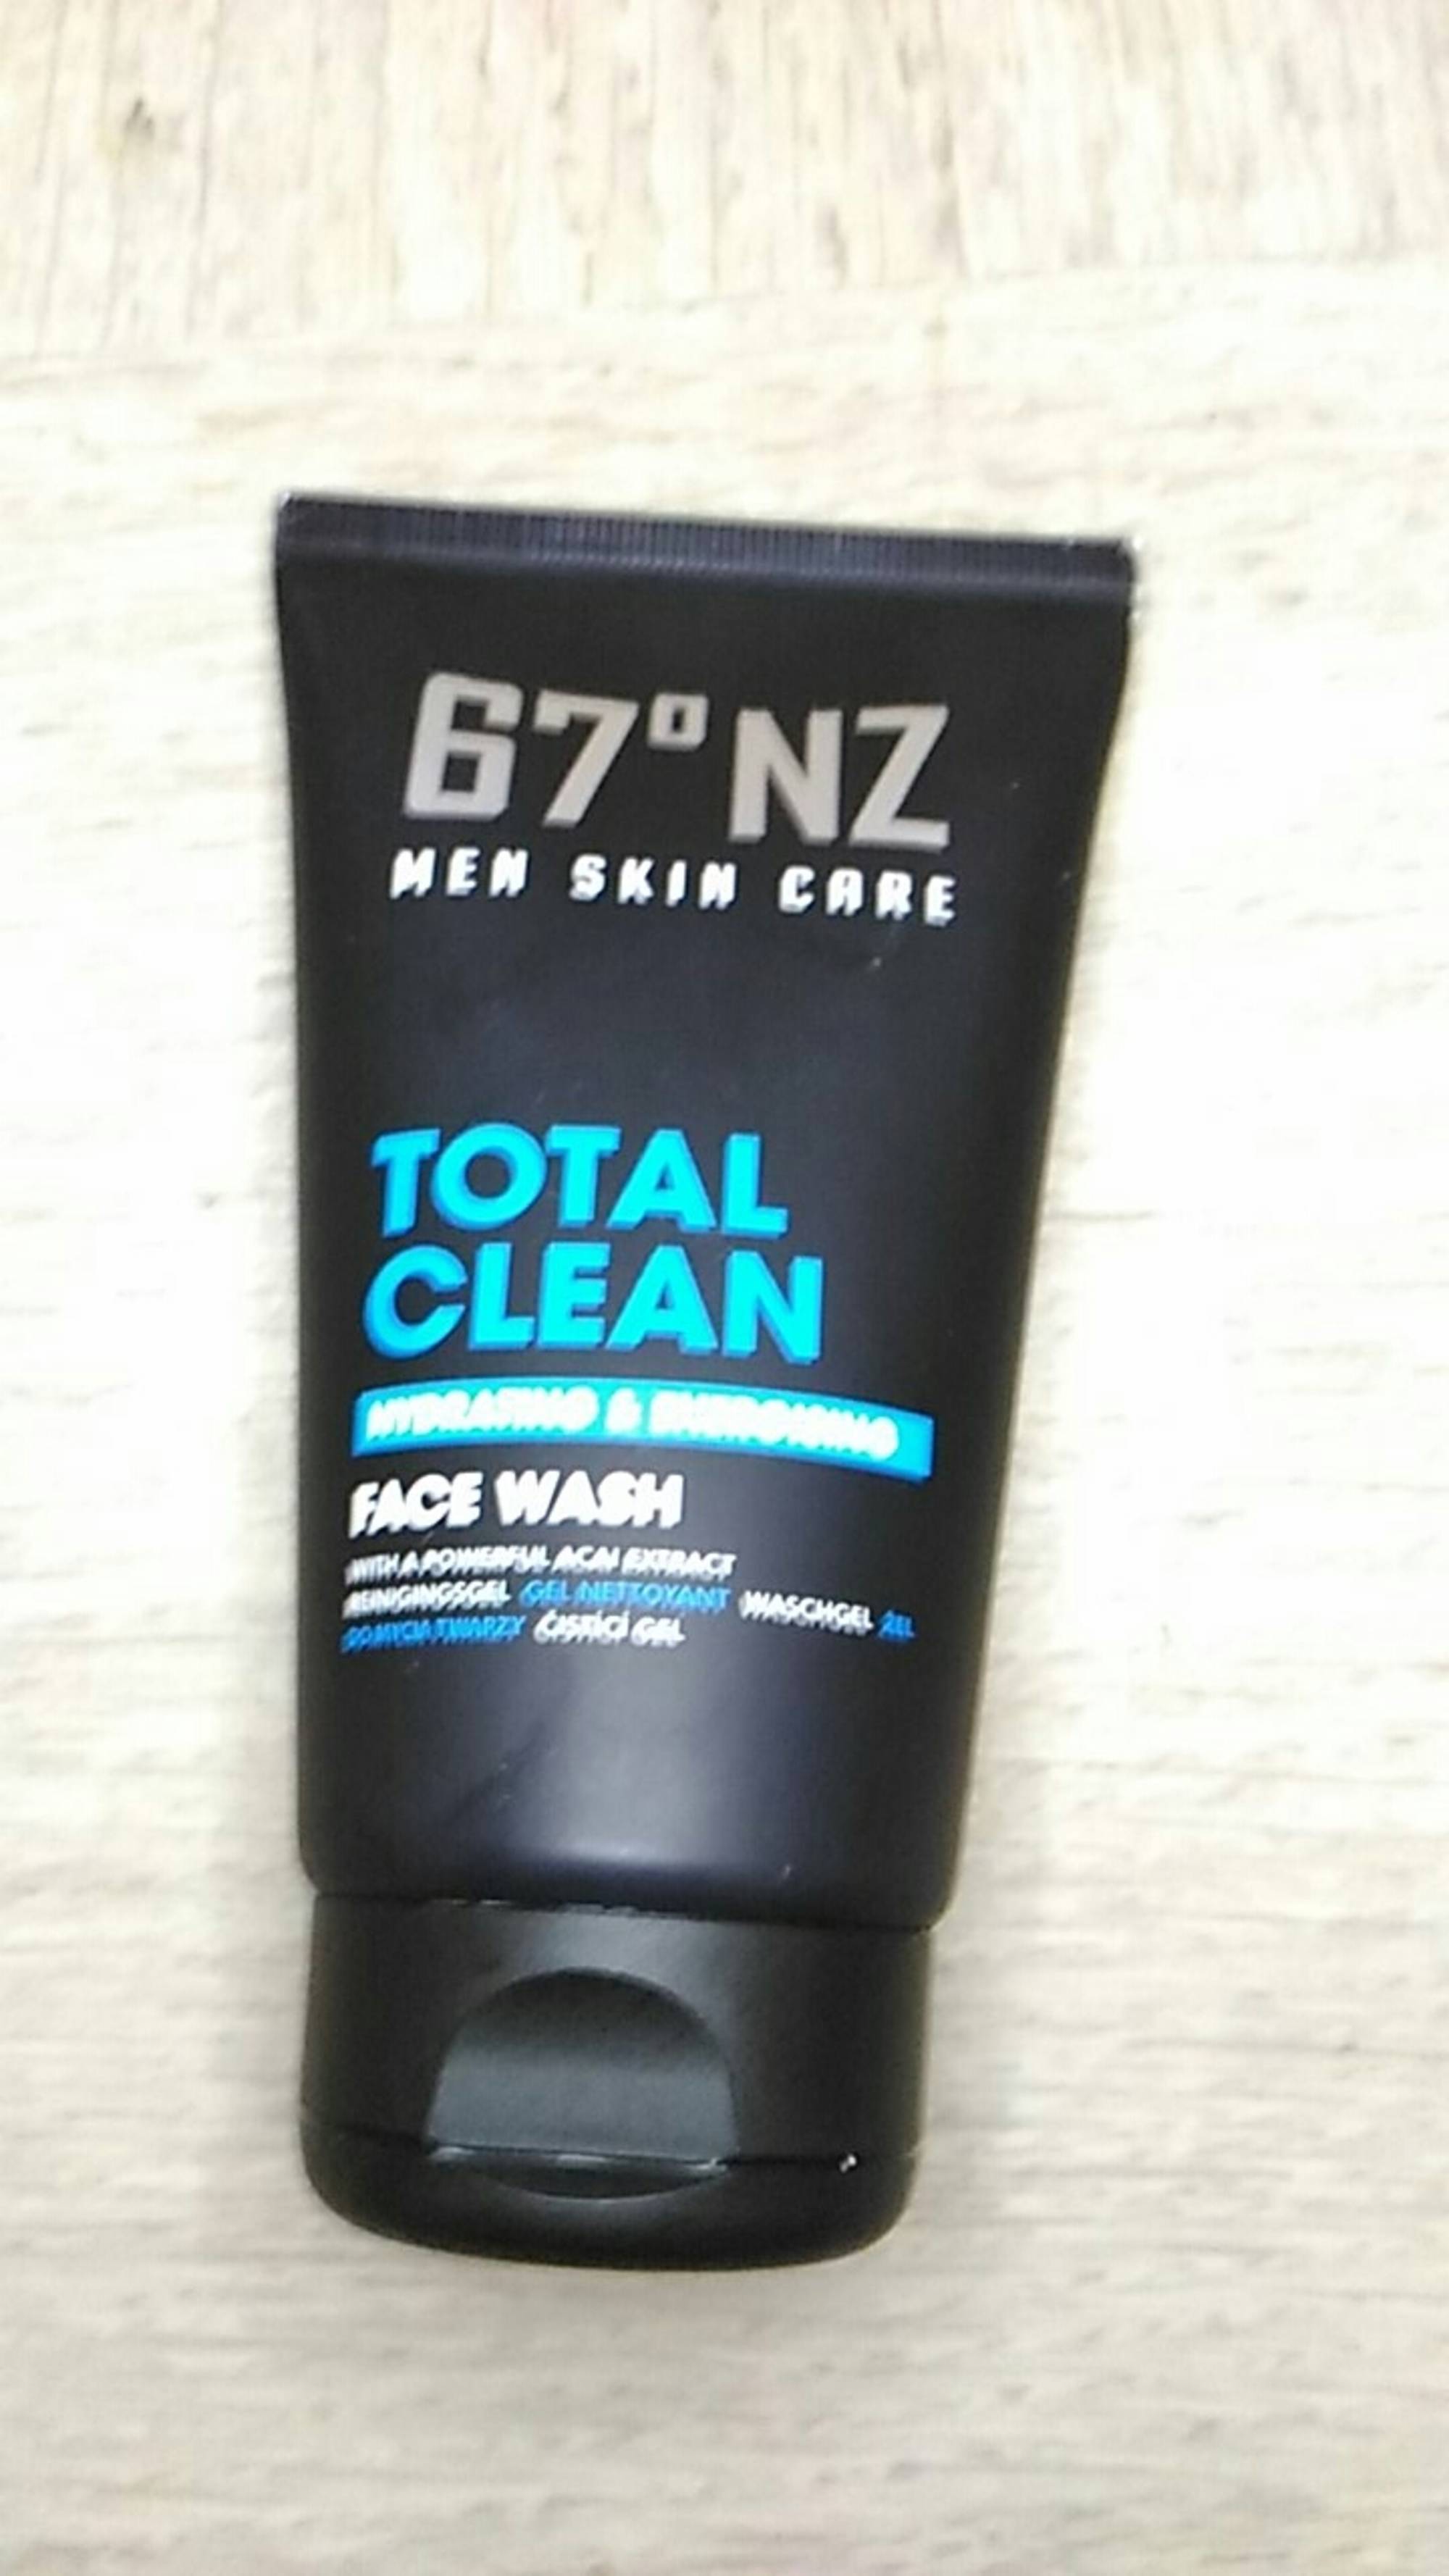 67° NZ - Total clean - Men skin care